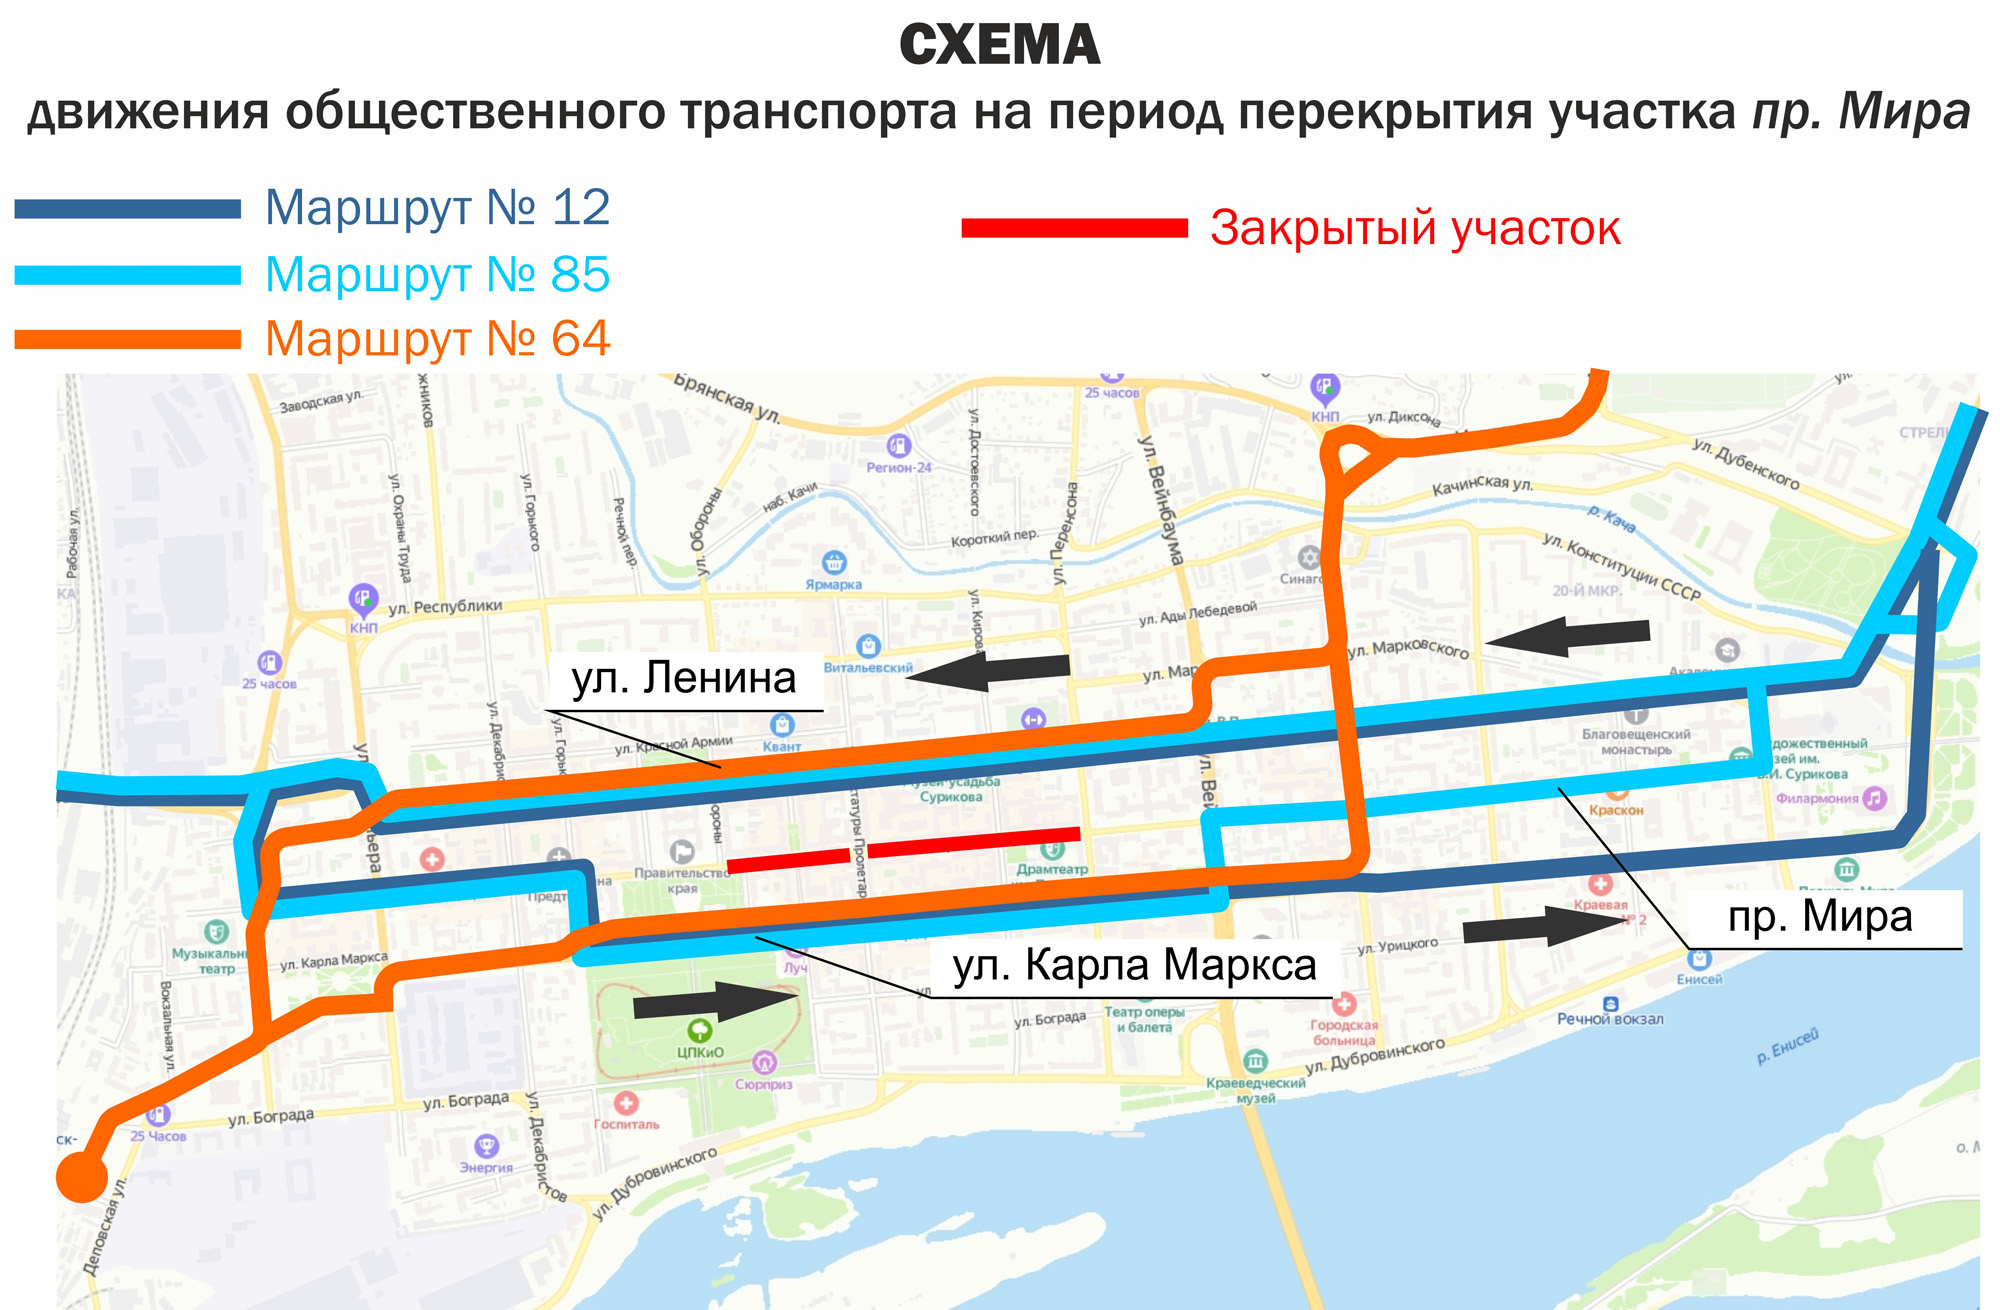 Все маршруты, которые делали остановки на проспекте Мира, будут останавливаться на улице Ленина и на Карла Маркса